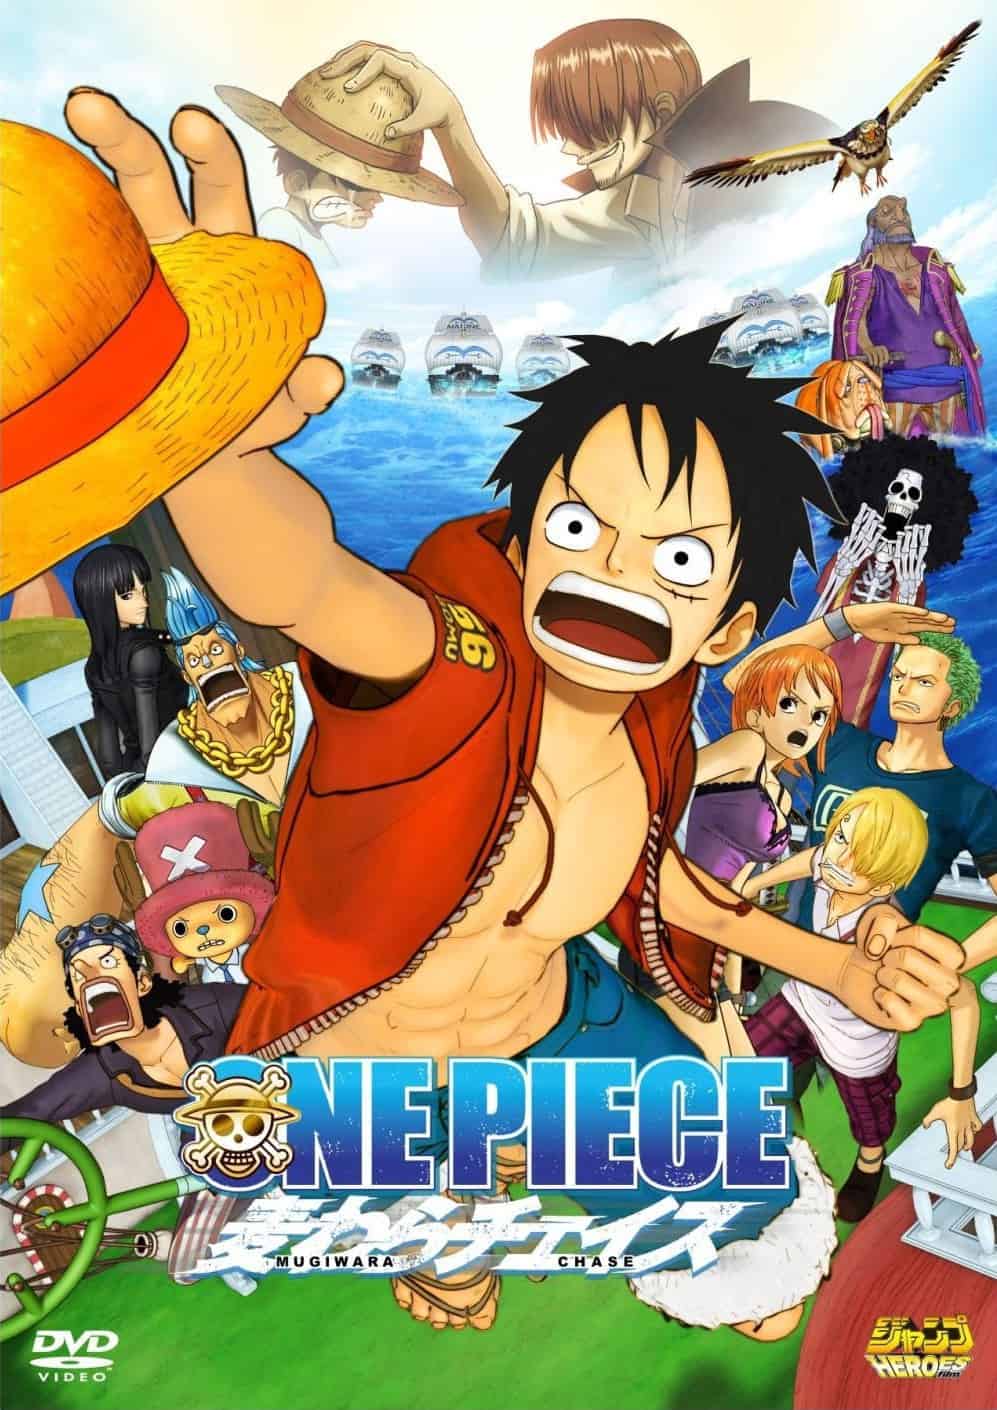 Filmy: One Piece